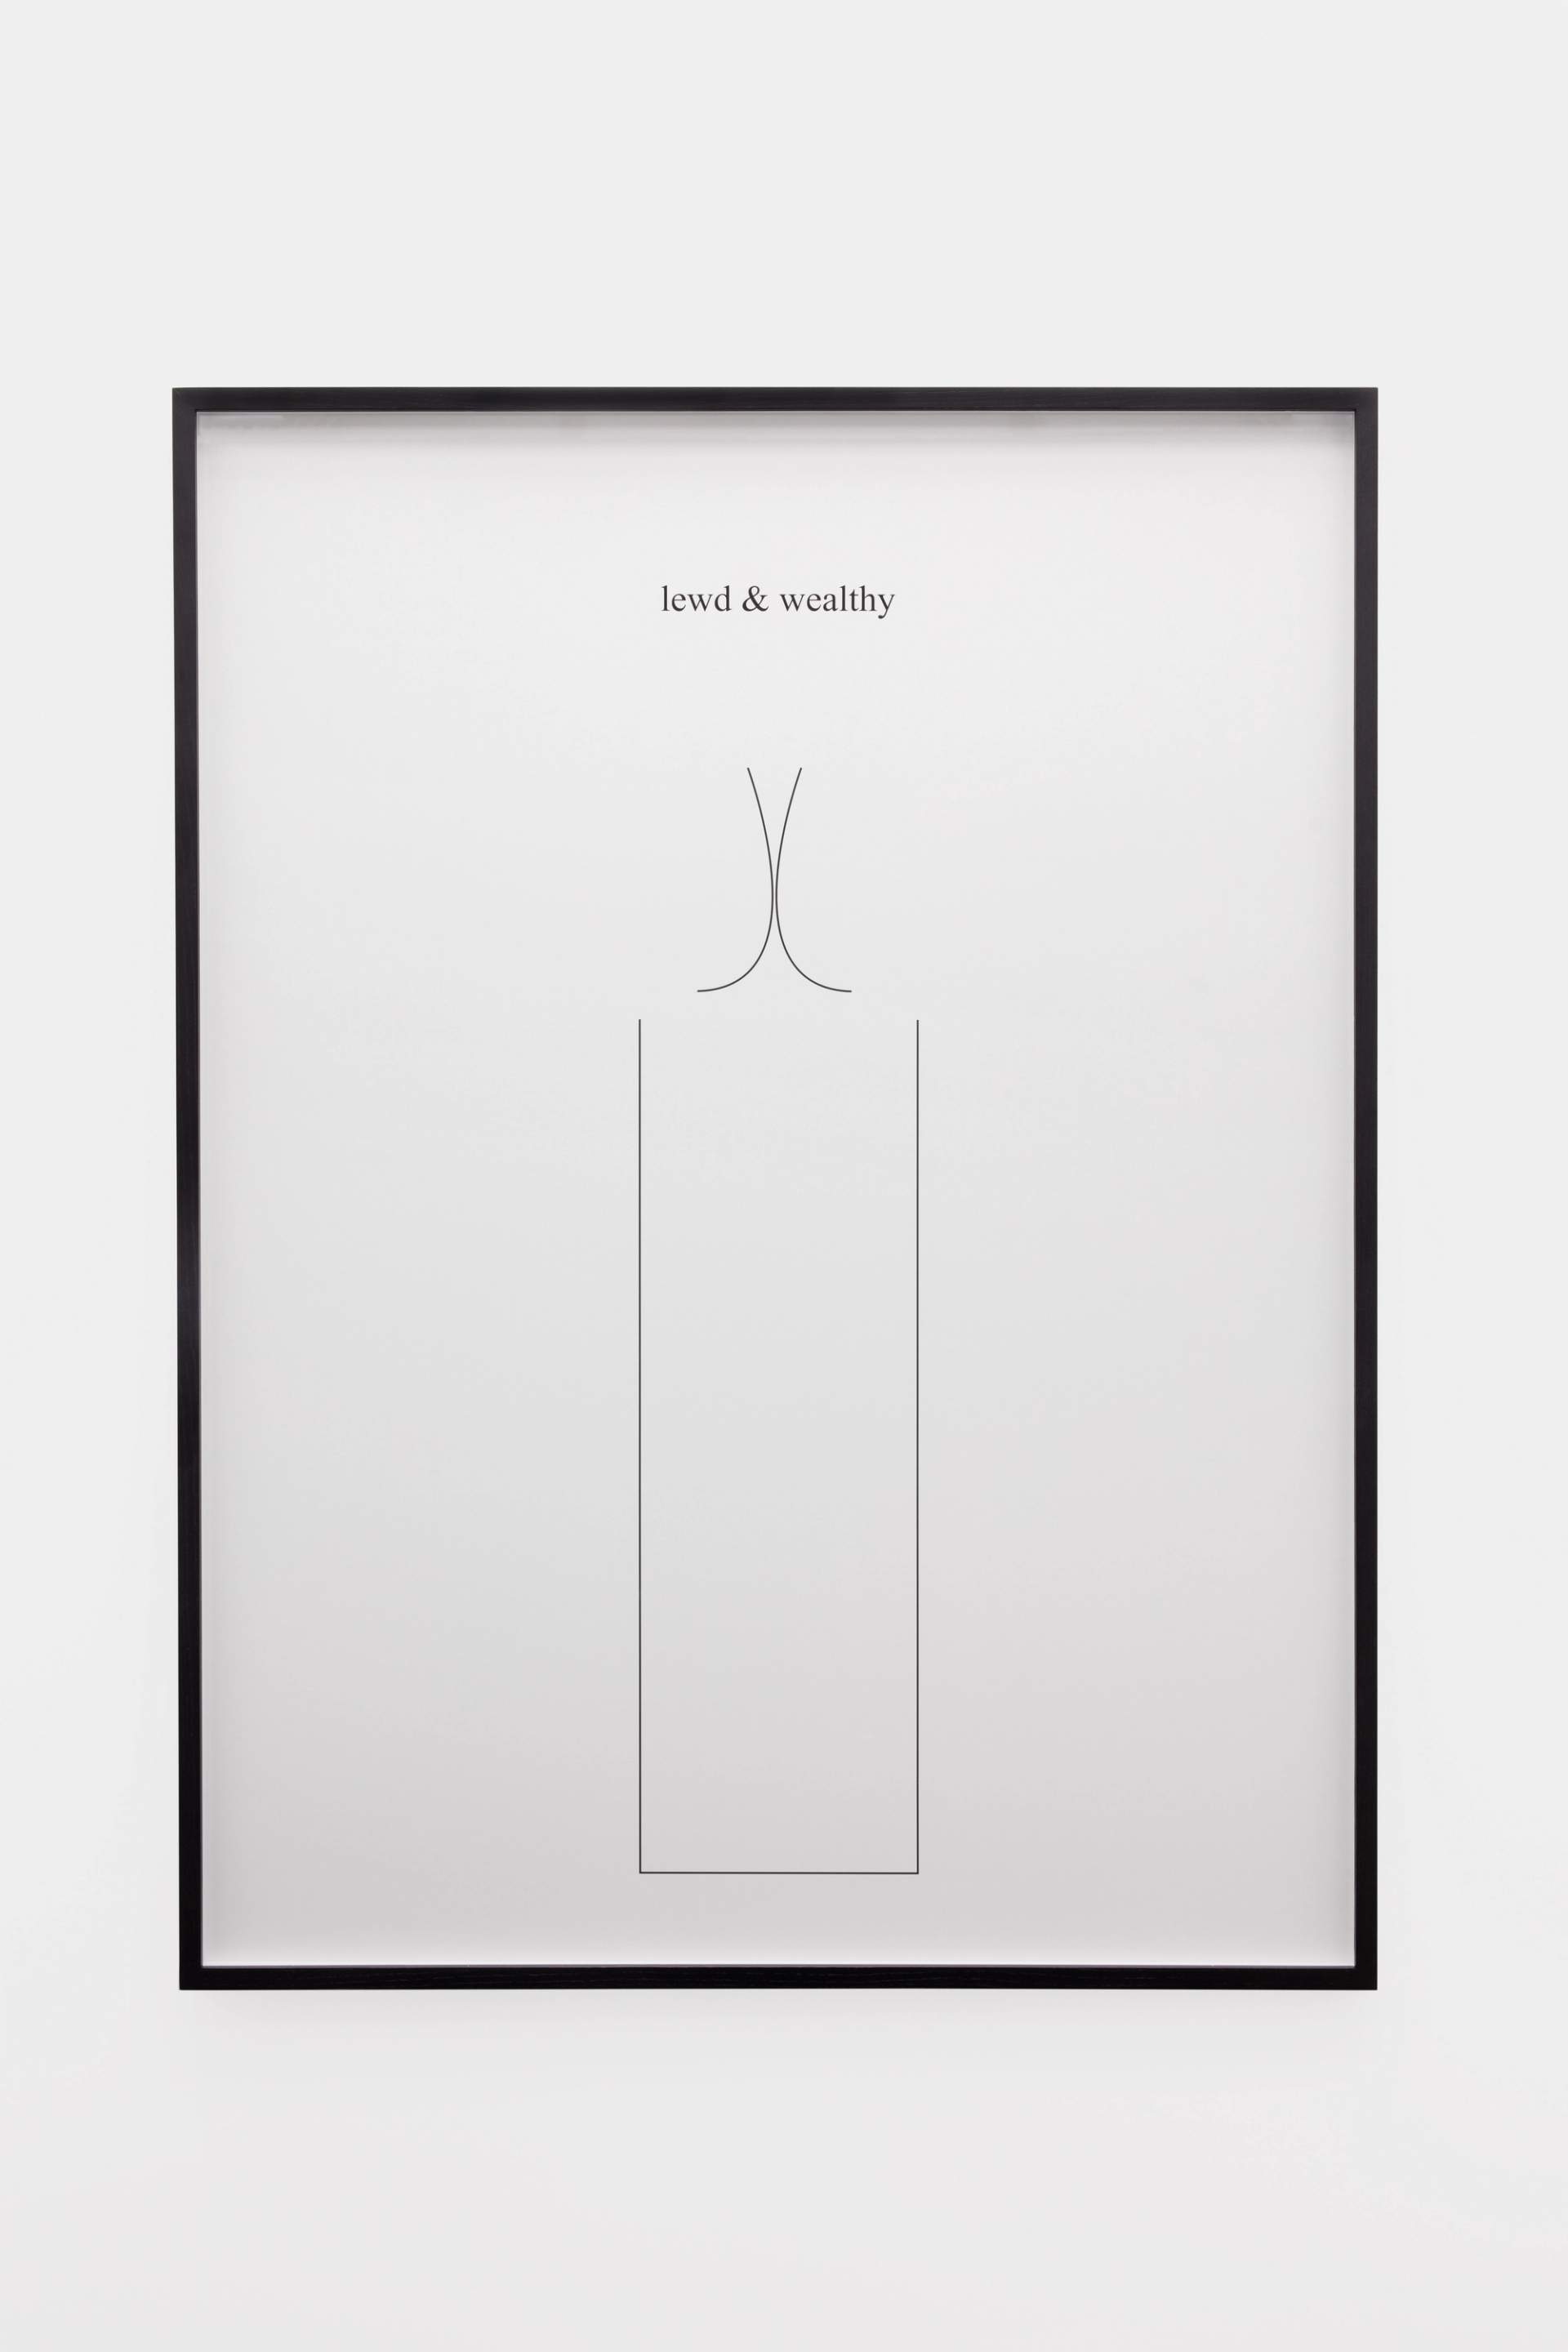 Anna-Sophie Berger, “lewd & poor,” 2022, Inkjet on paper, frame, 100 x 135 cm